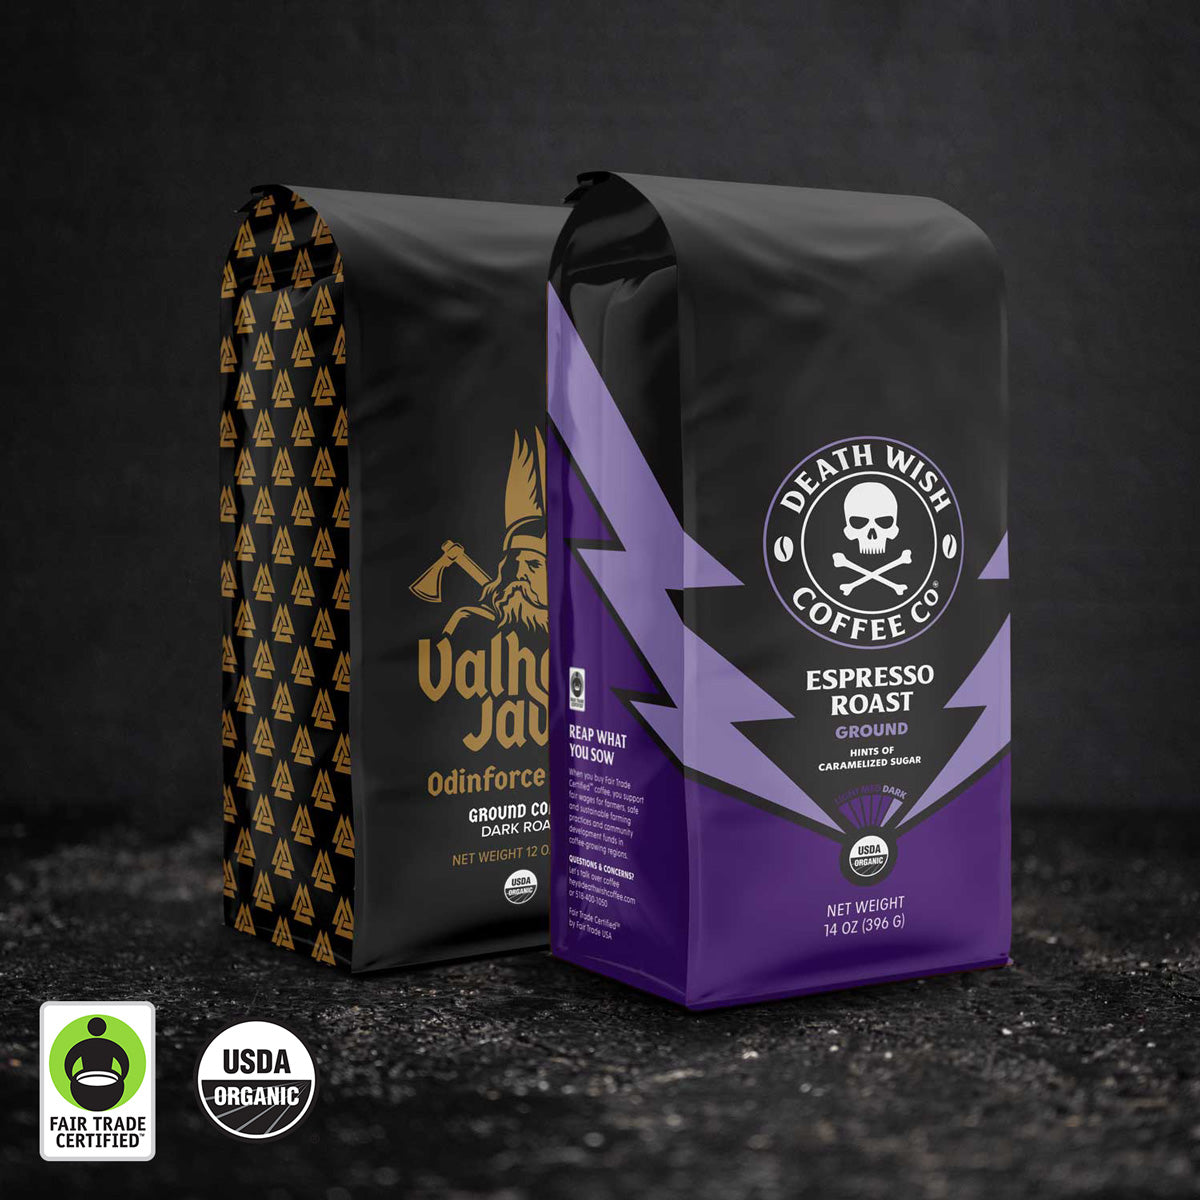 Death Wish Coffee Espresso Roast + Valhalla Java Ground Bundle